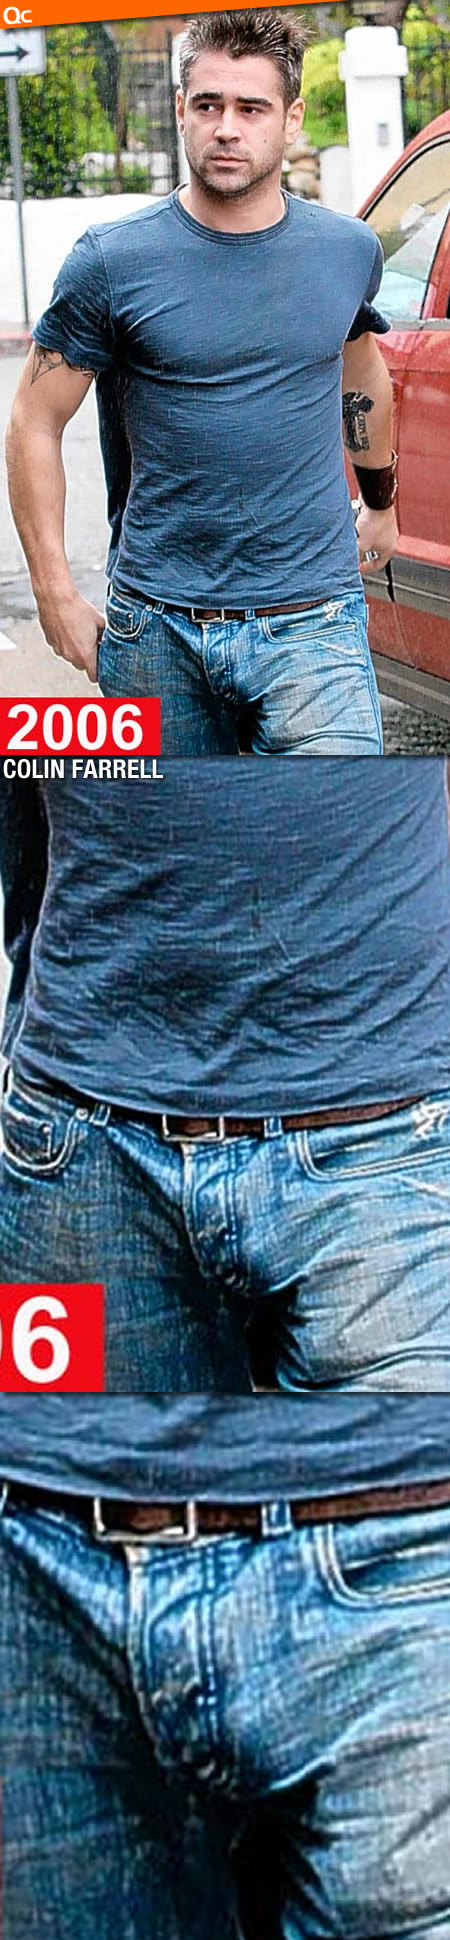 Colin Farrell 06 Bulge